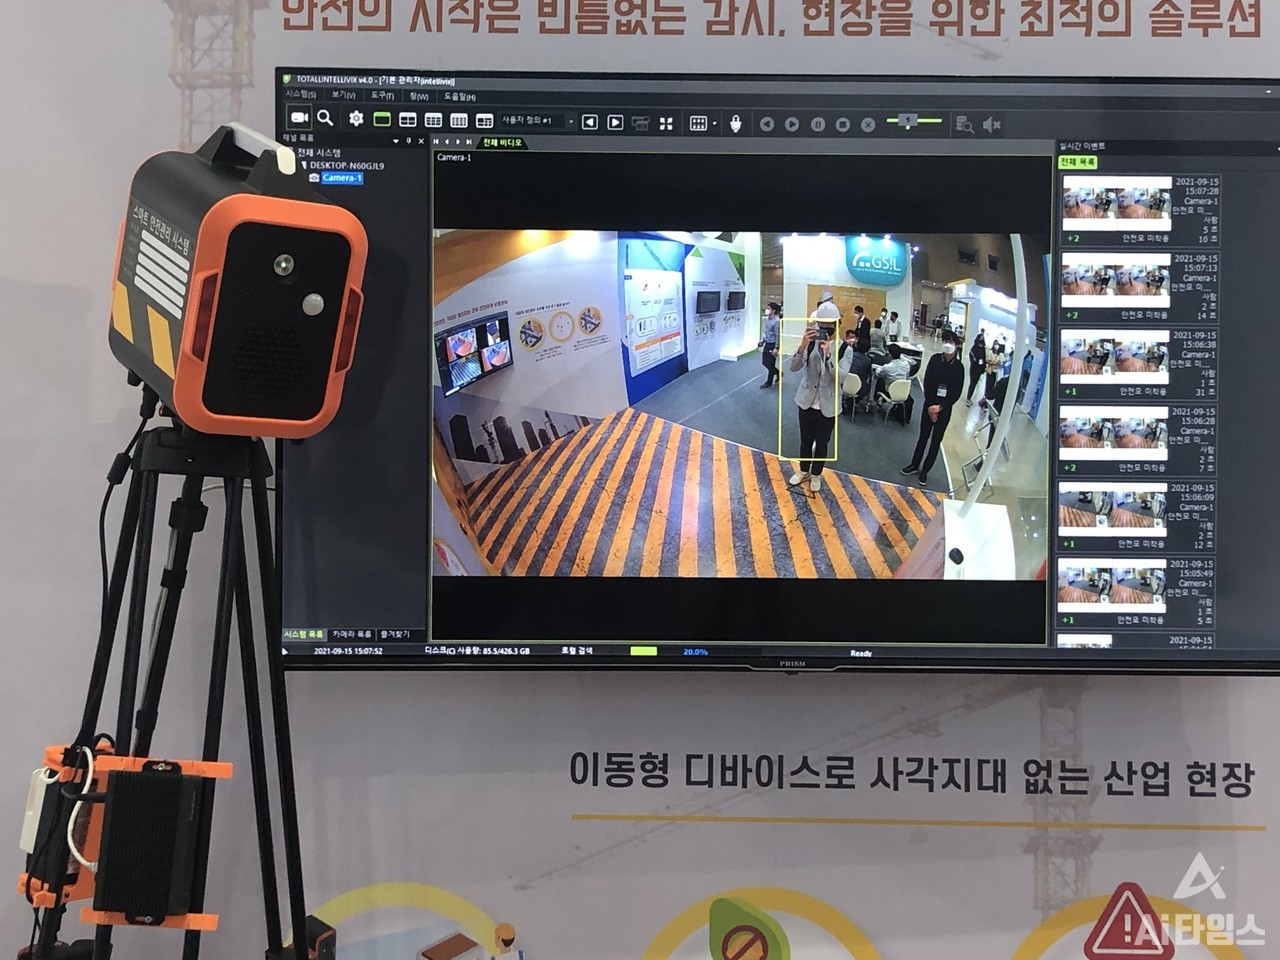 인텔리빅스는 한국건설안전박람회에서  영상분석 AI 기술을 활용해 사고를 예방할 수 있는 기술을 선보였다. (사진=김동원 기자)